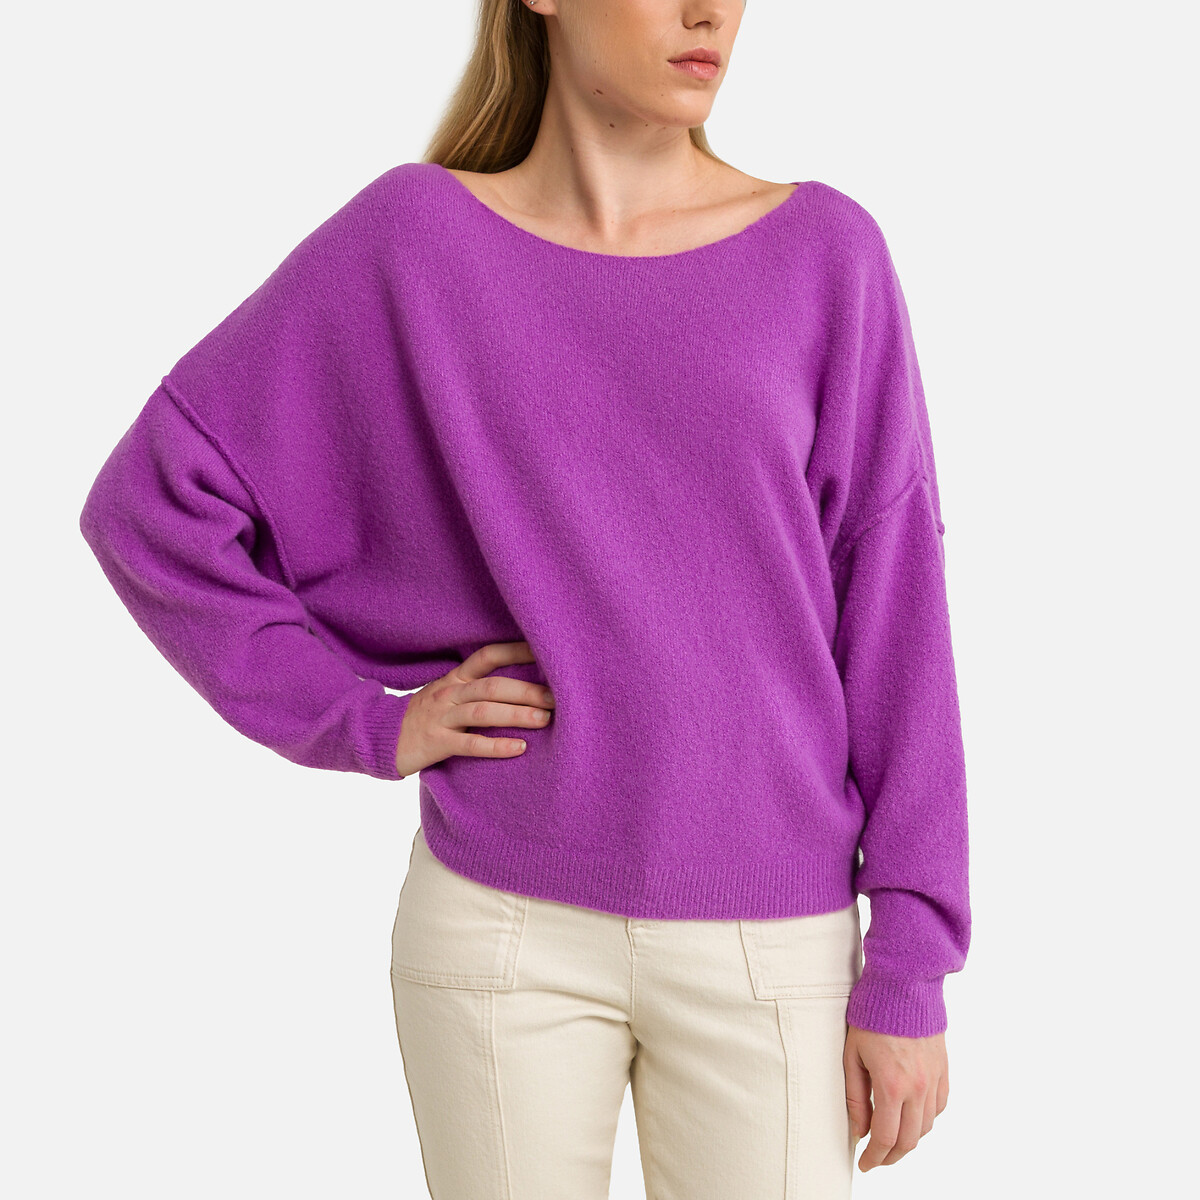 Пуловер с длинными рукавами и вырезом-лодочкой DAMSVILLE XS/S фиолетовый пуловер с вырезом лодочка из смесовой шерсти wopy xs s бежевый